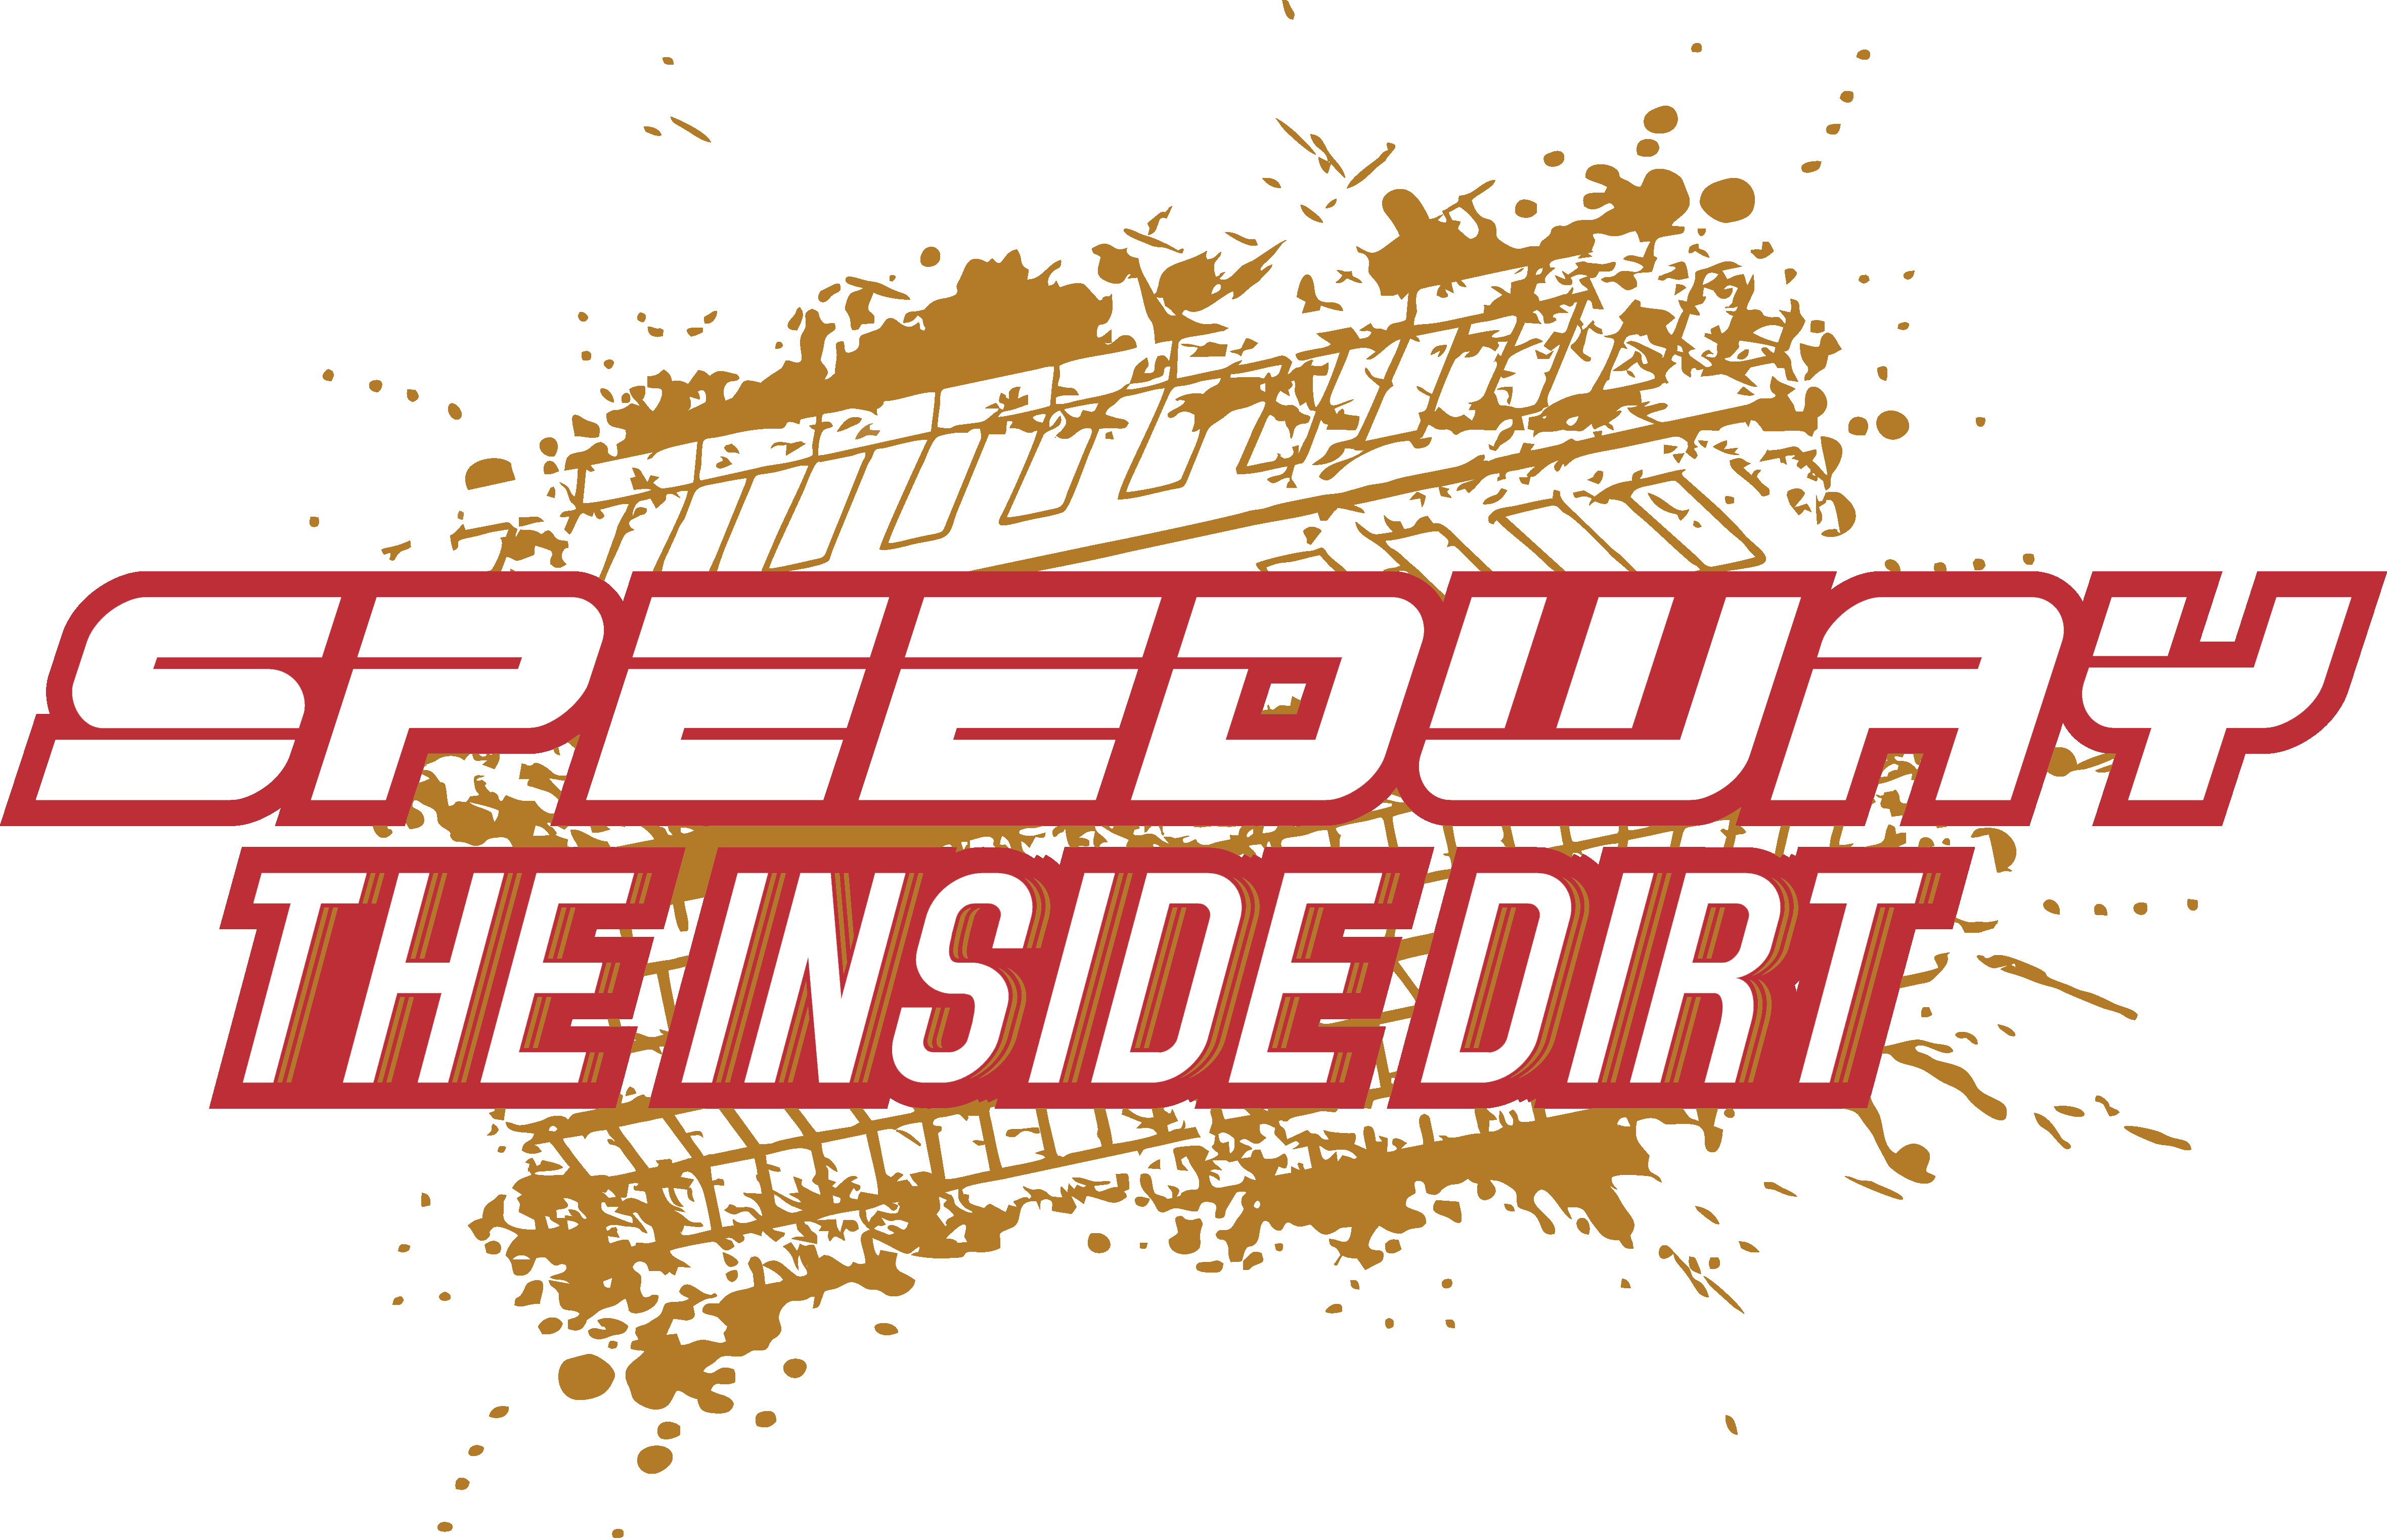 Speedway the Inside Dirt